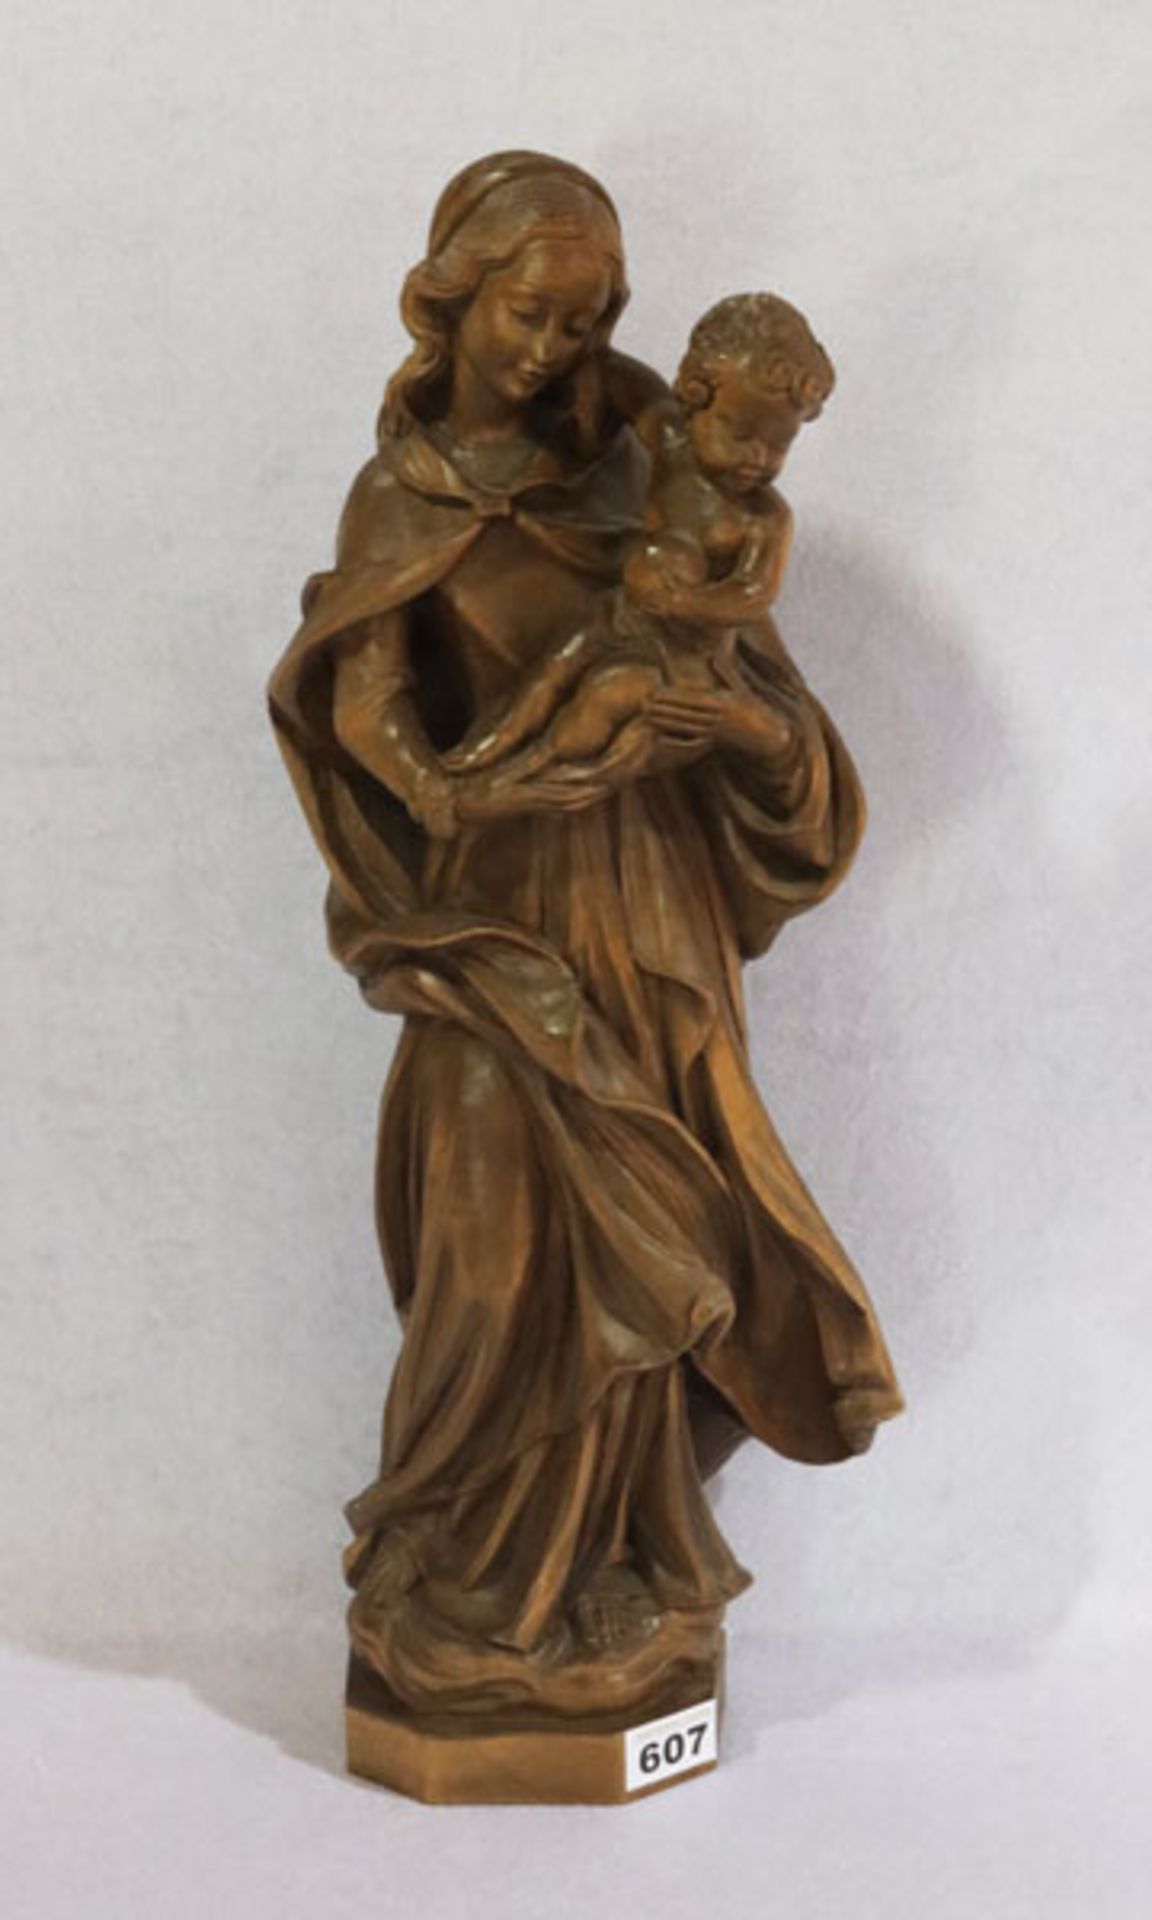 Holz Figurenskulptur 'Maria mit Kind', dunkel gebeizt, H 54 cm, leicht bestossen